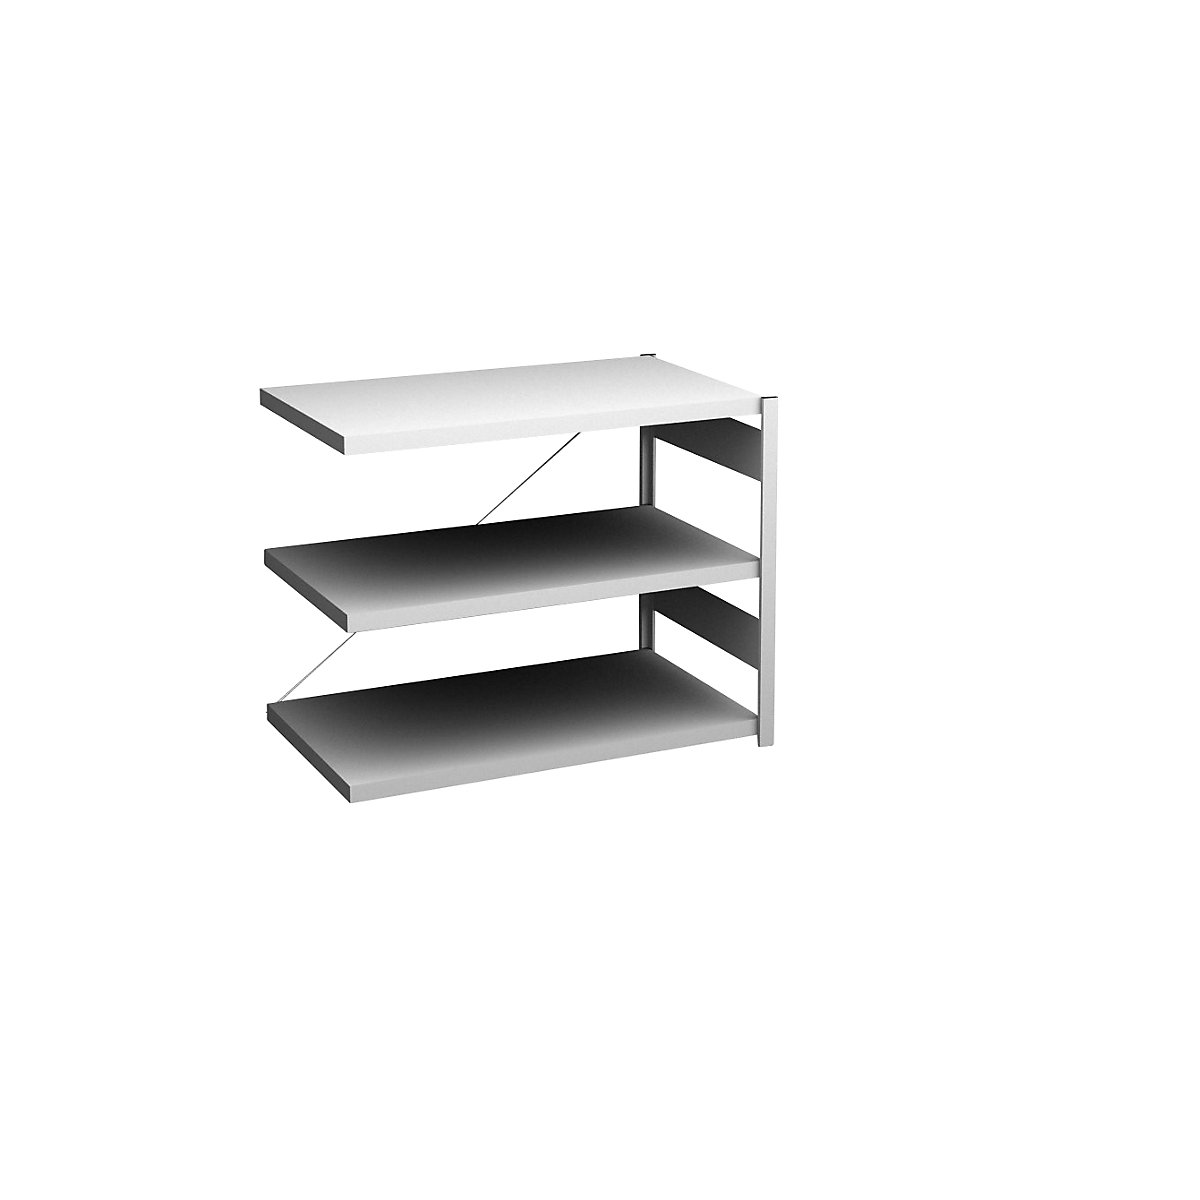 Sideboard shelving unit, light grey – hofe, height 825 mm, 3 shelves, extension shelf unit, shelf depth 600 mm, max. shelf load 140 kg-6